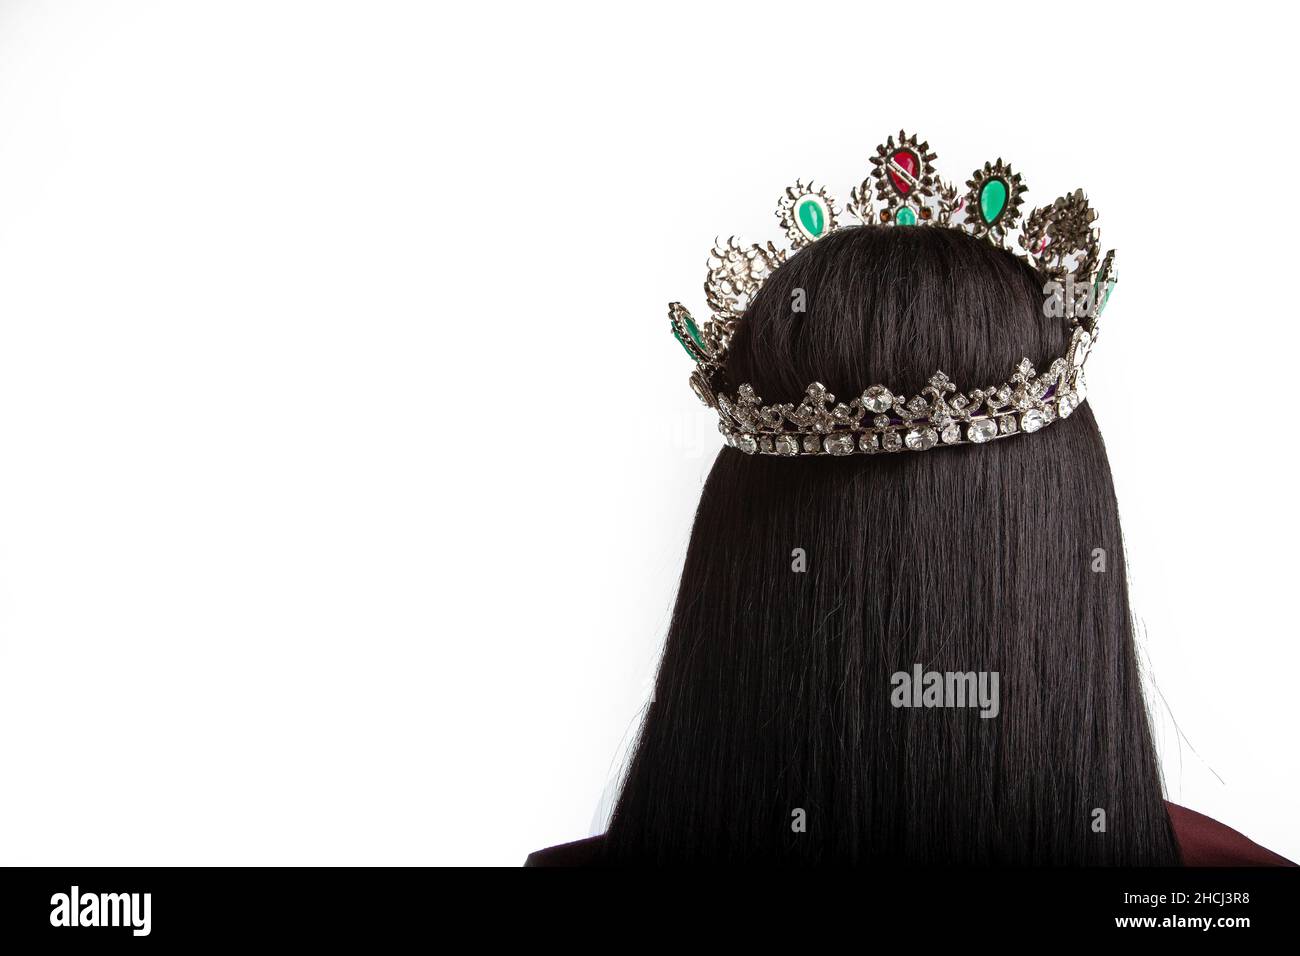 Schöne Aufnahme eines schwarzhaarigen Mädchens, das rückwärts mit einer Krone auf einem Kopf steht Stockfoto